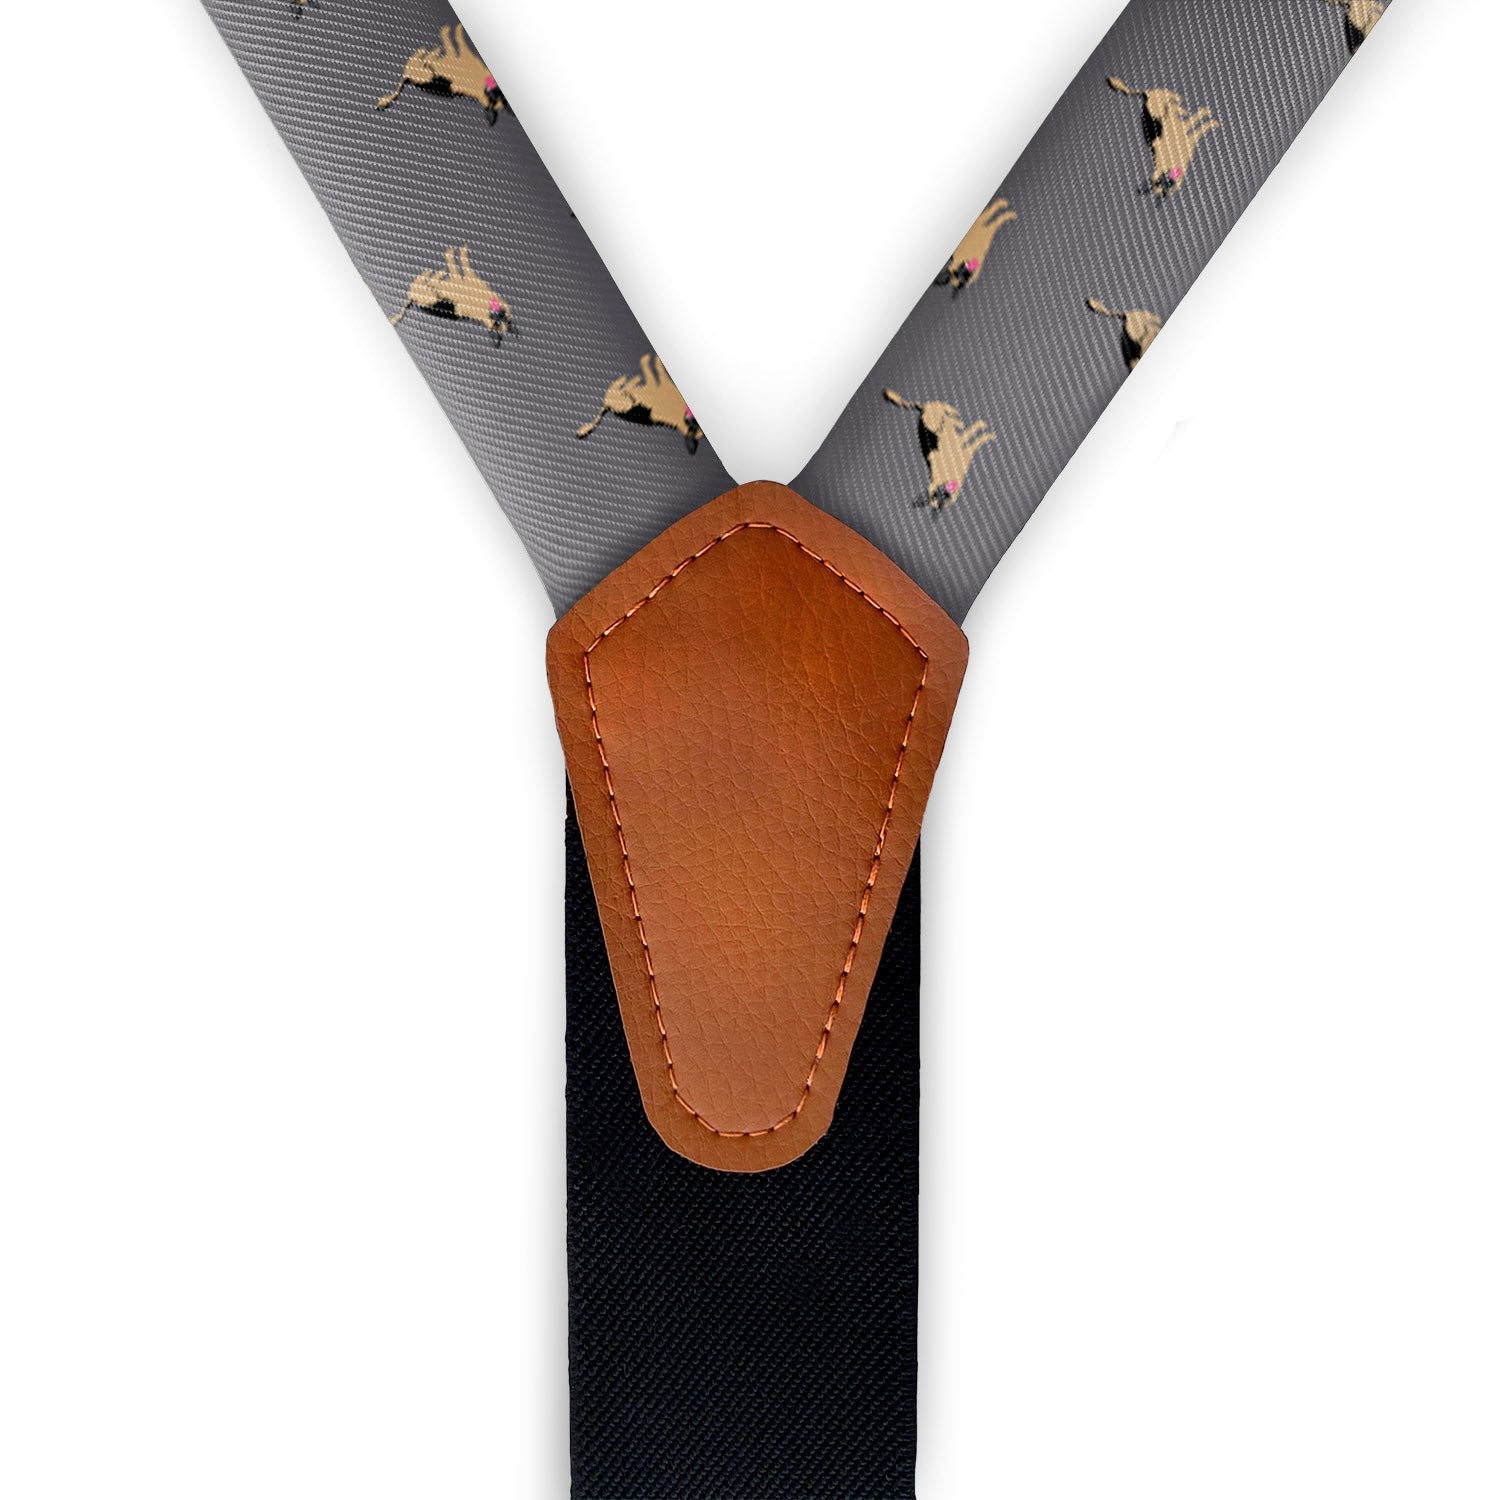 German Shepherd Suspenders